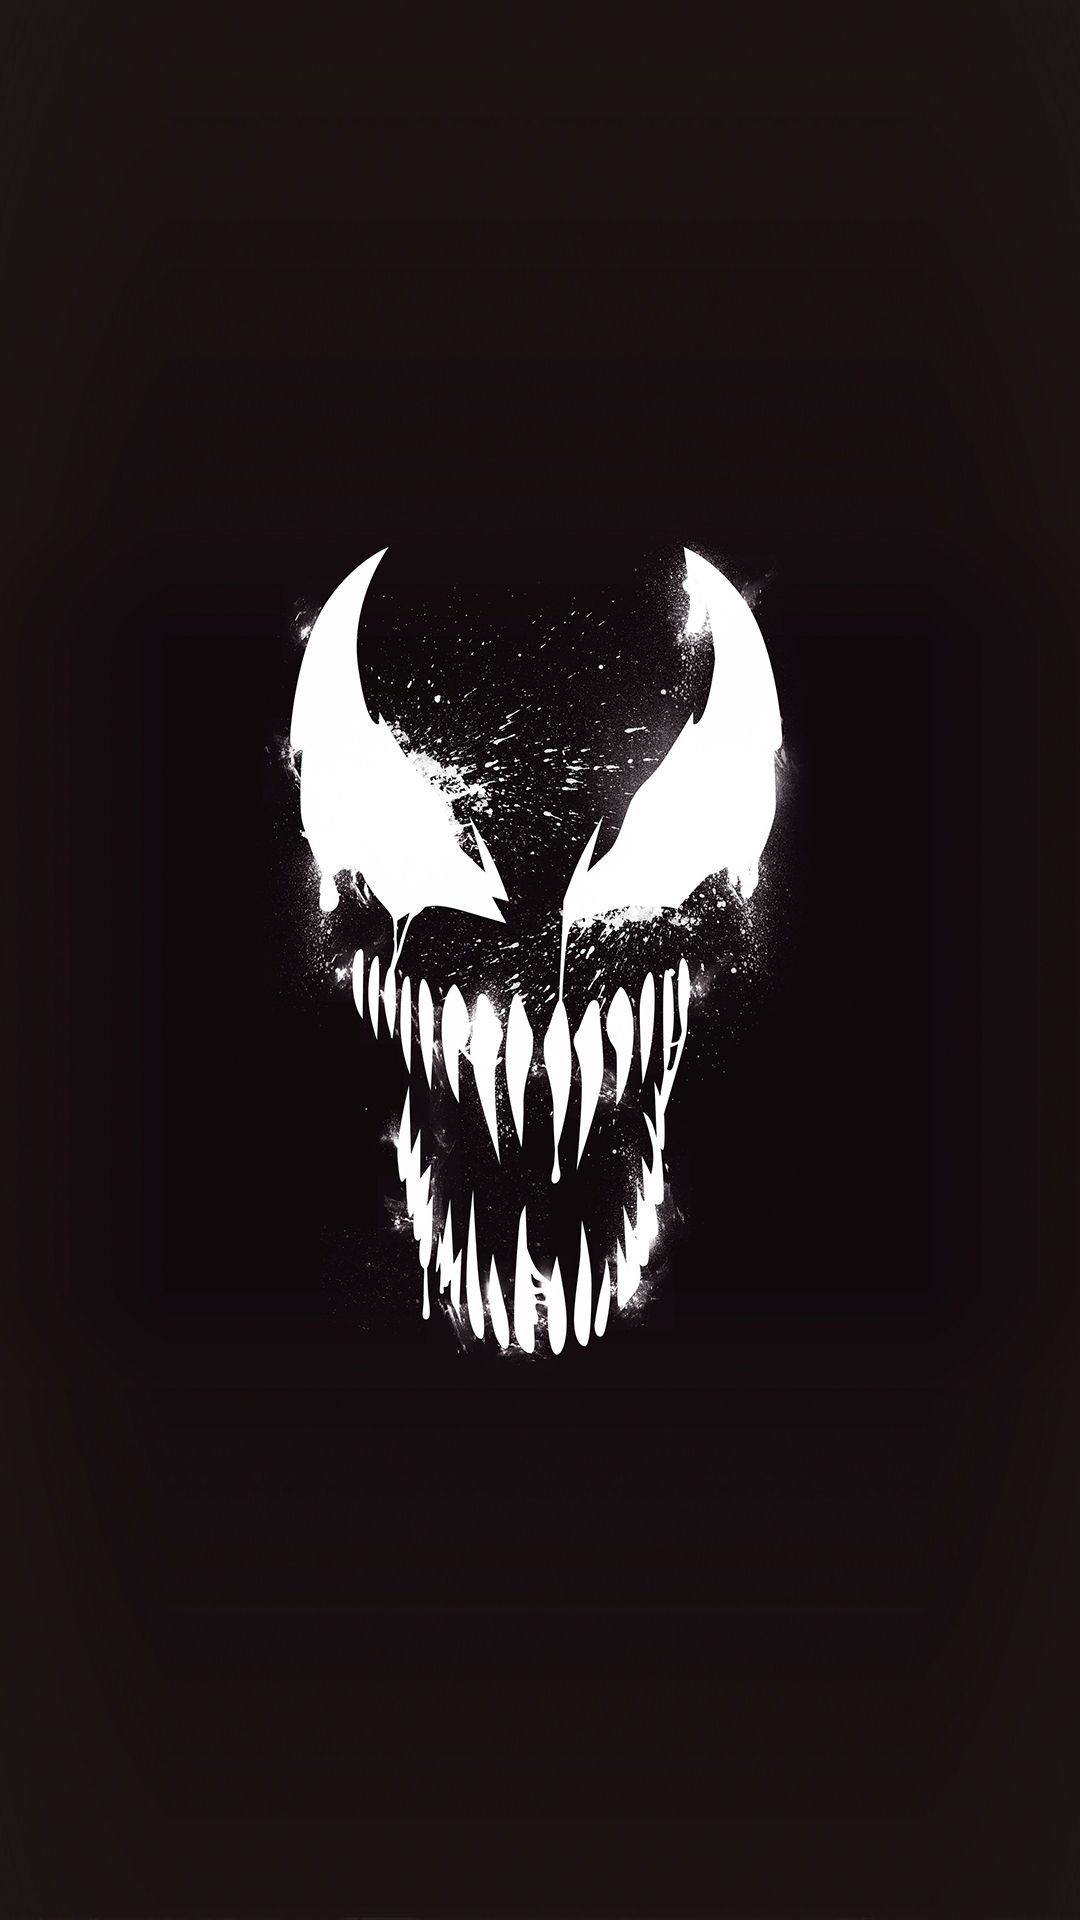 Live wallpaper Spider Man / Venom 4k Dark DOWNLOAD (2833462719)